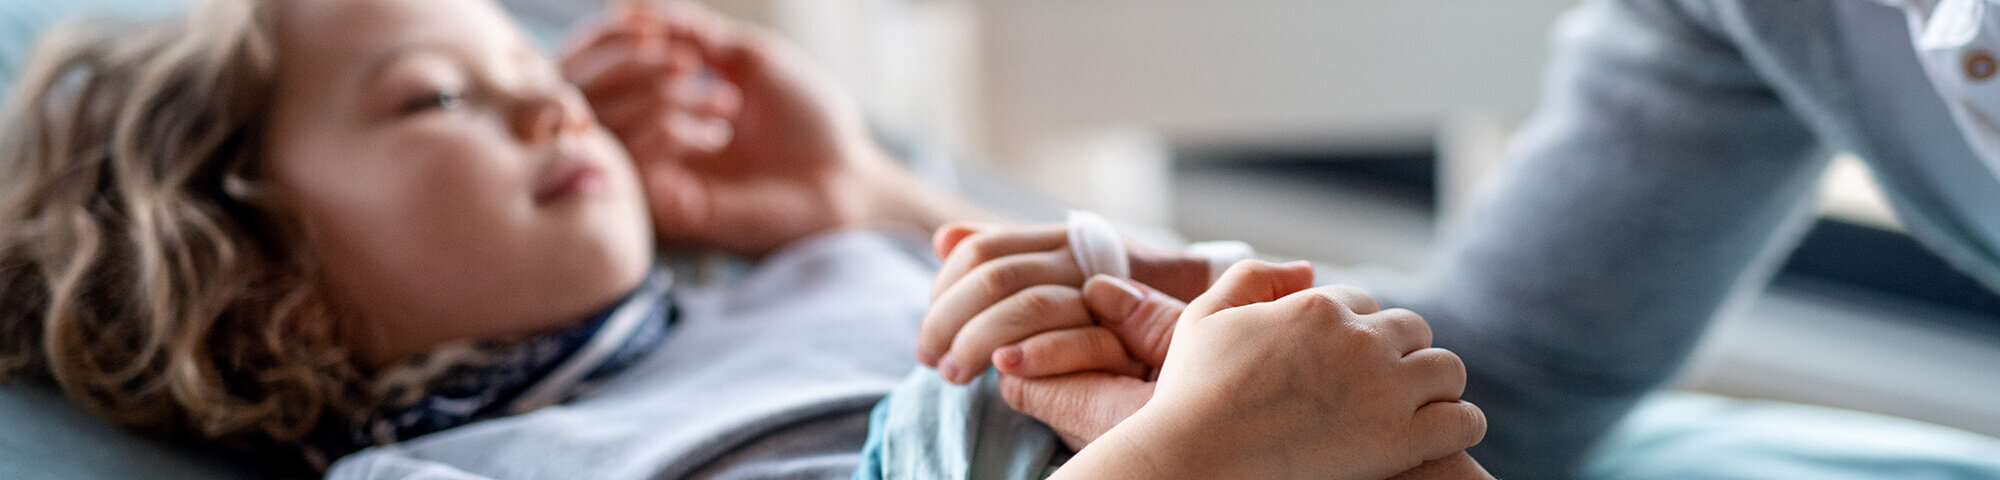 Kind liegt im Krankenbett und hält die Hand der Mutter